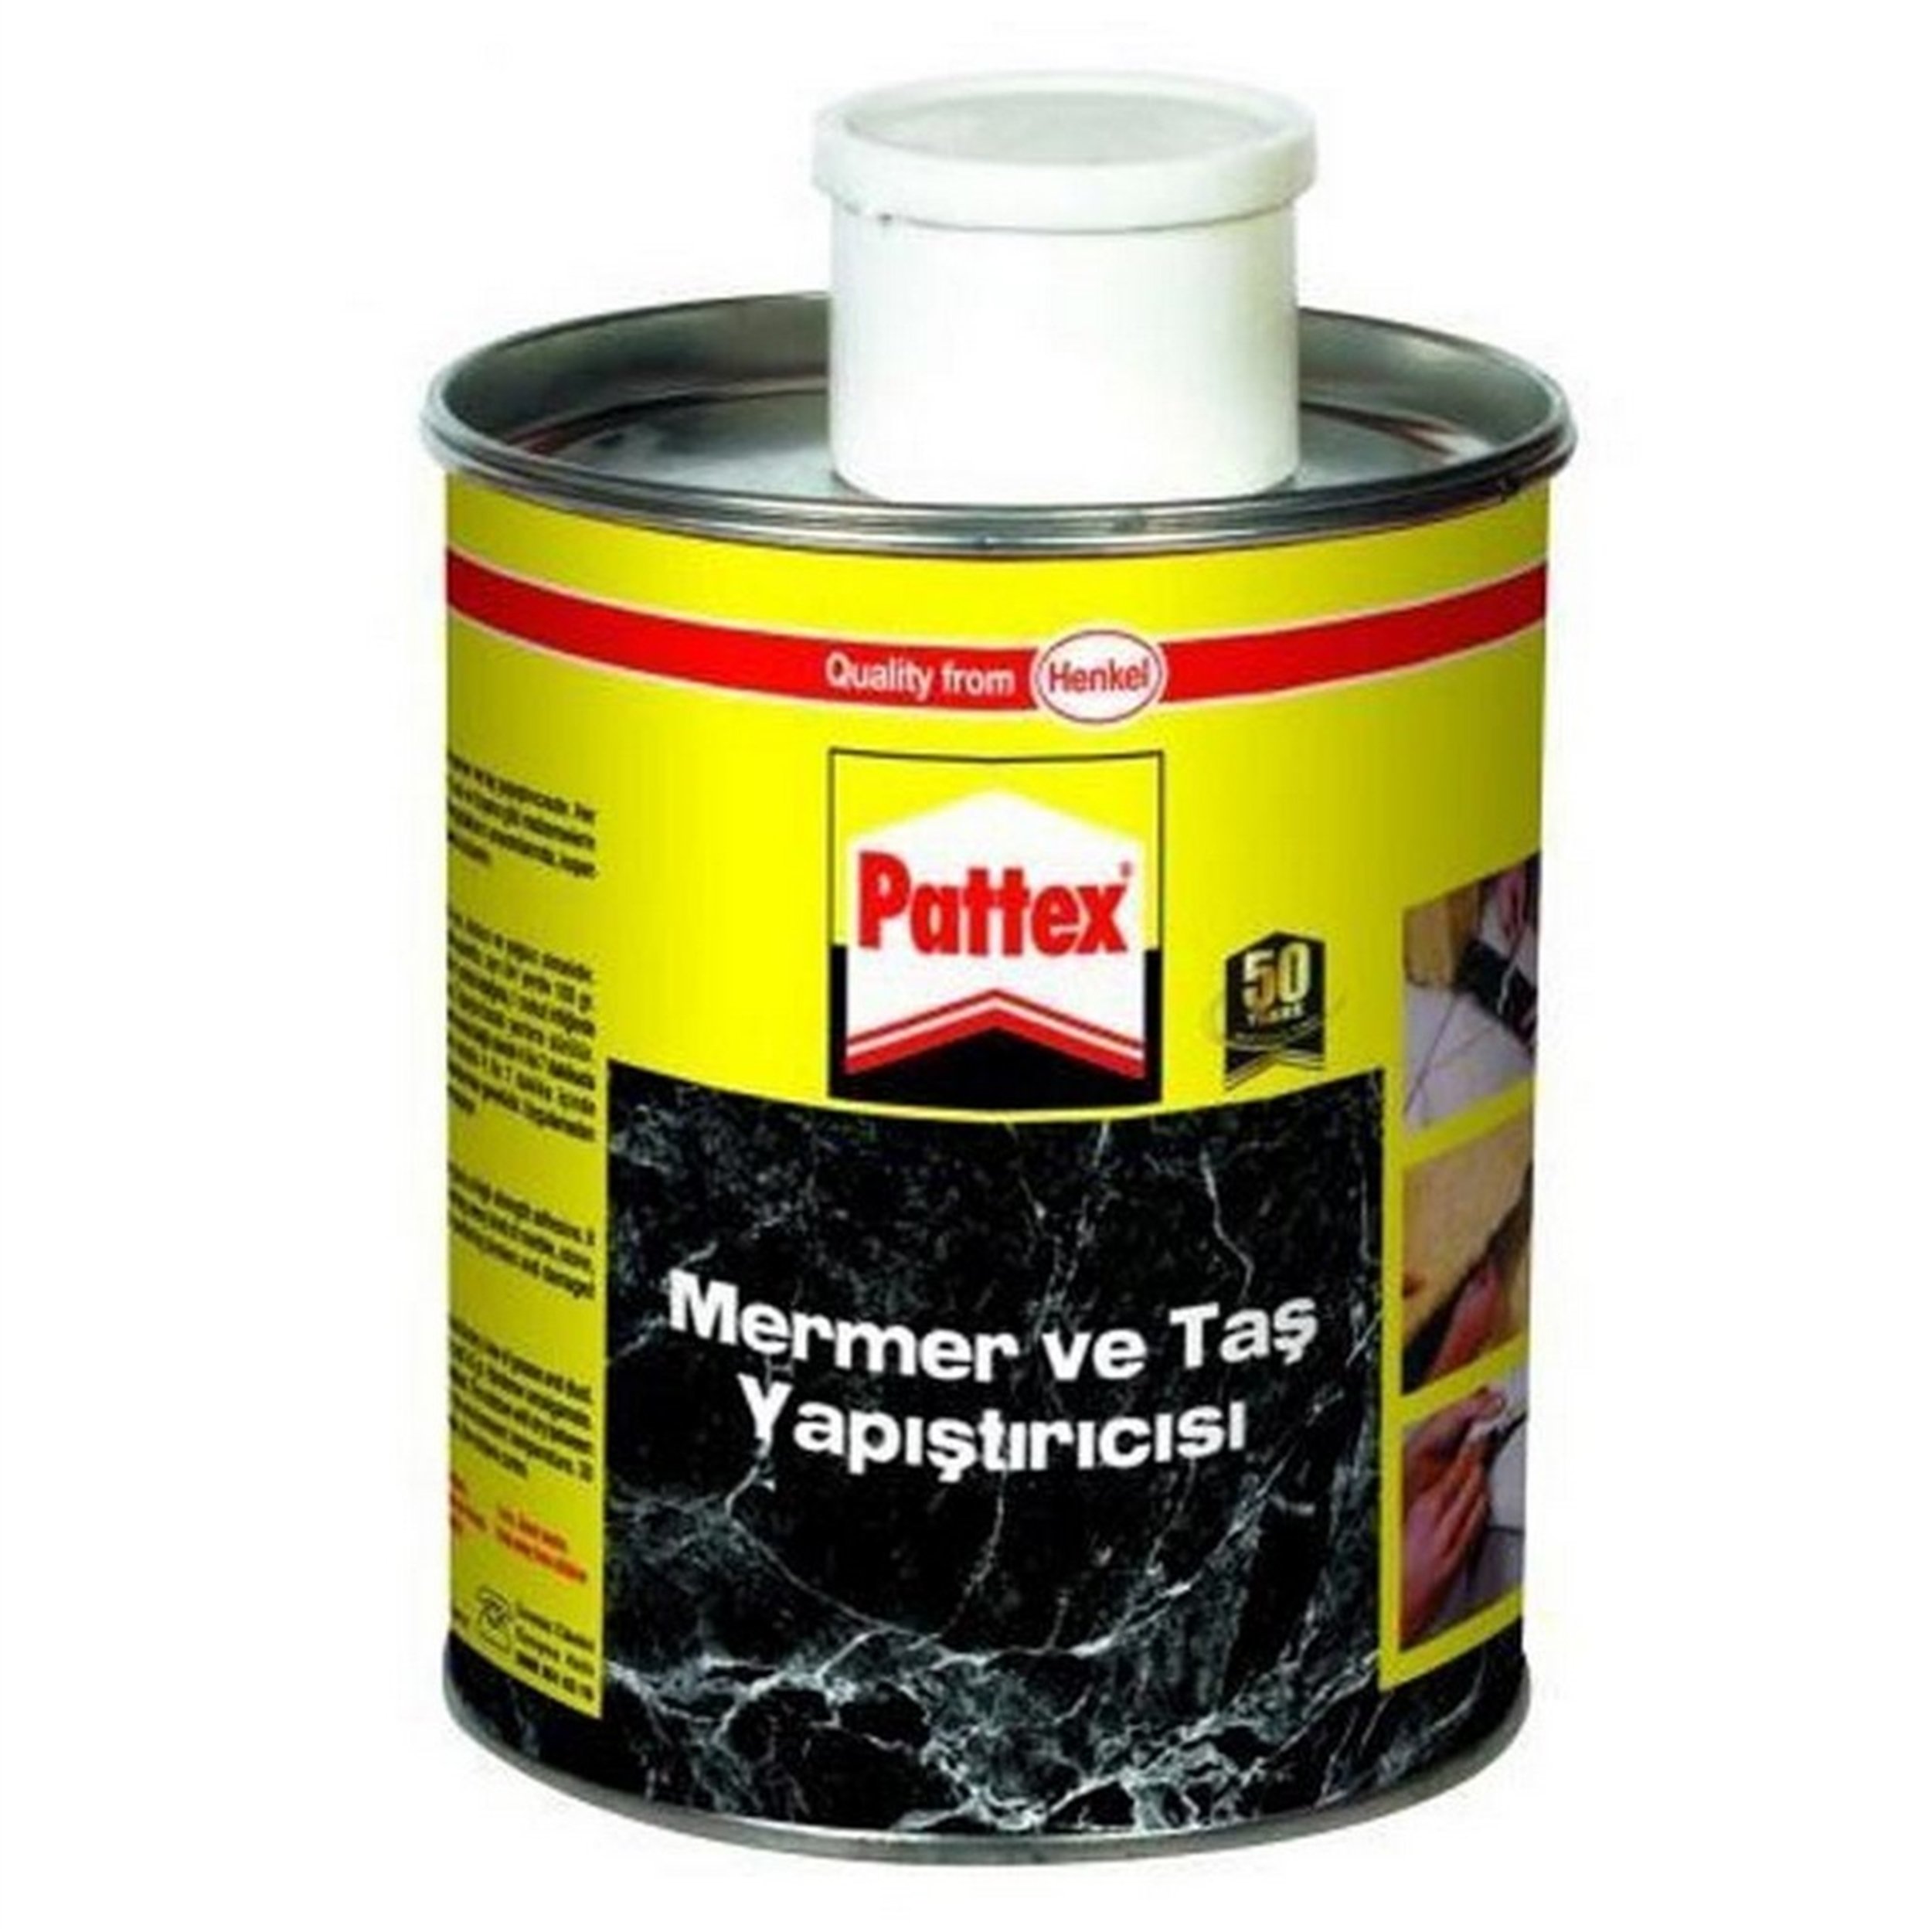 Pattex 800 Gr Kutu + 25 Gr Sertleştirici Mermer ve Taş Yapıştırıcısı  (HNKL-177761) | Afeks Yapı Market